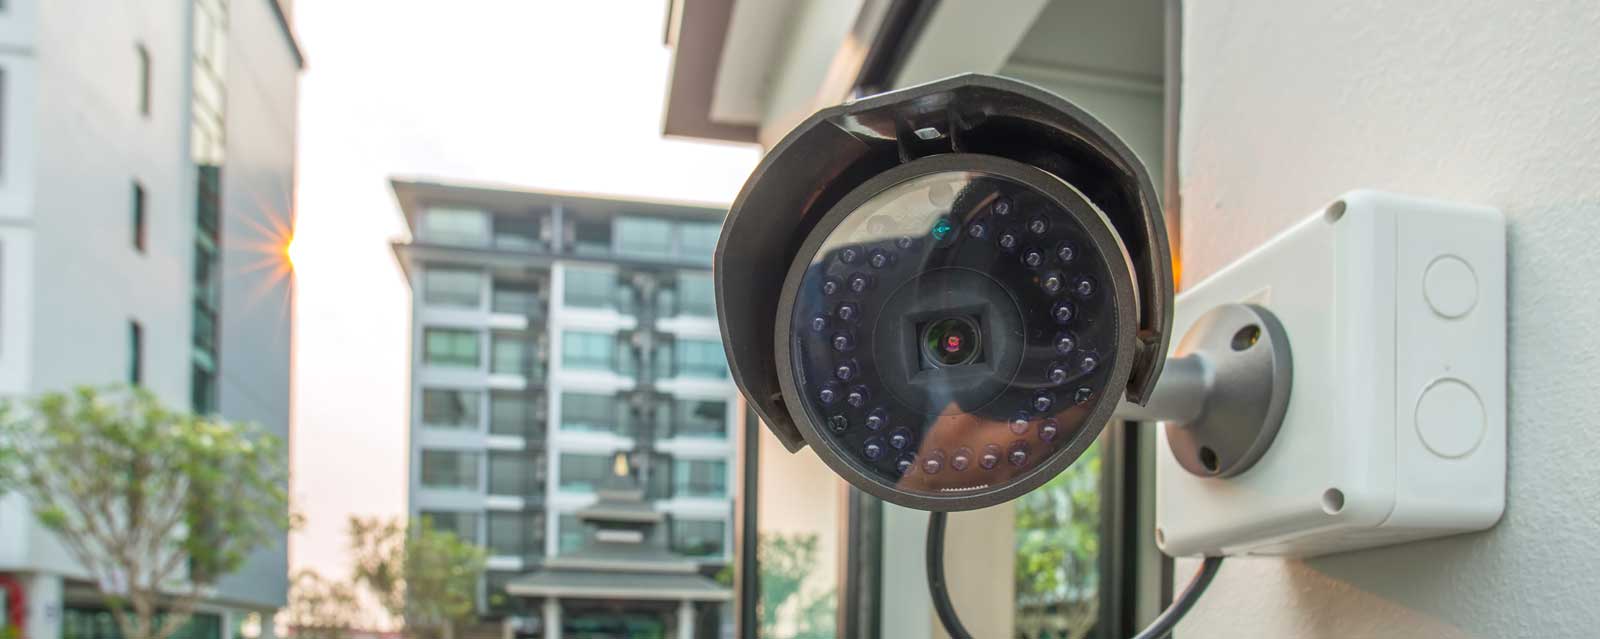 lux lighting in surveillance cameras